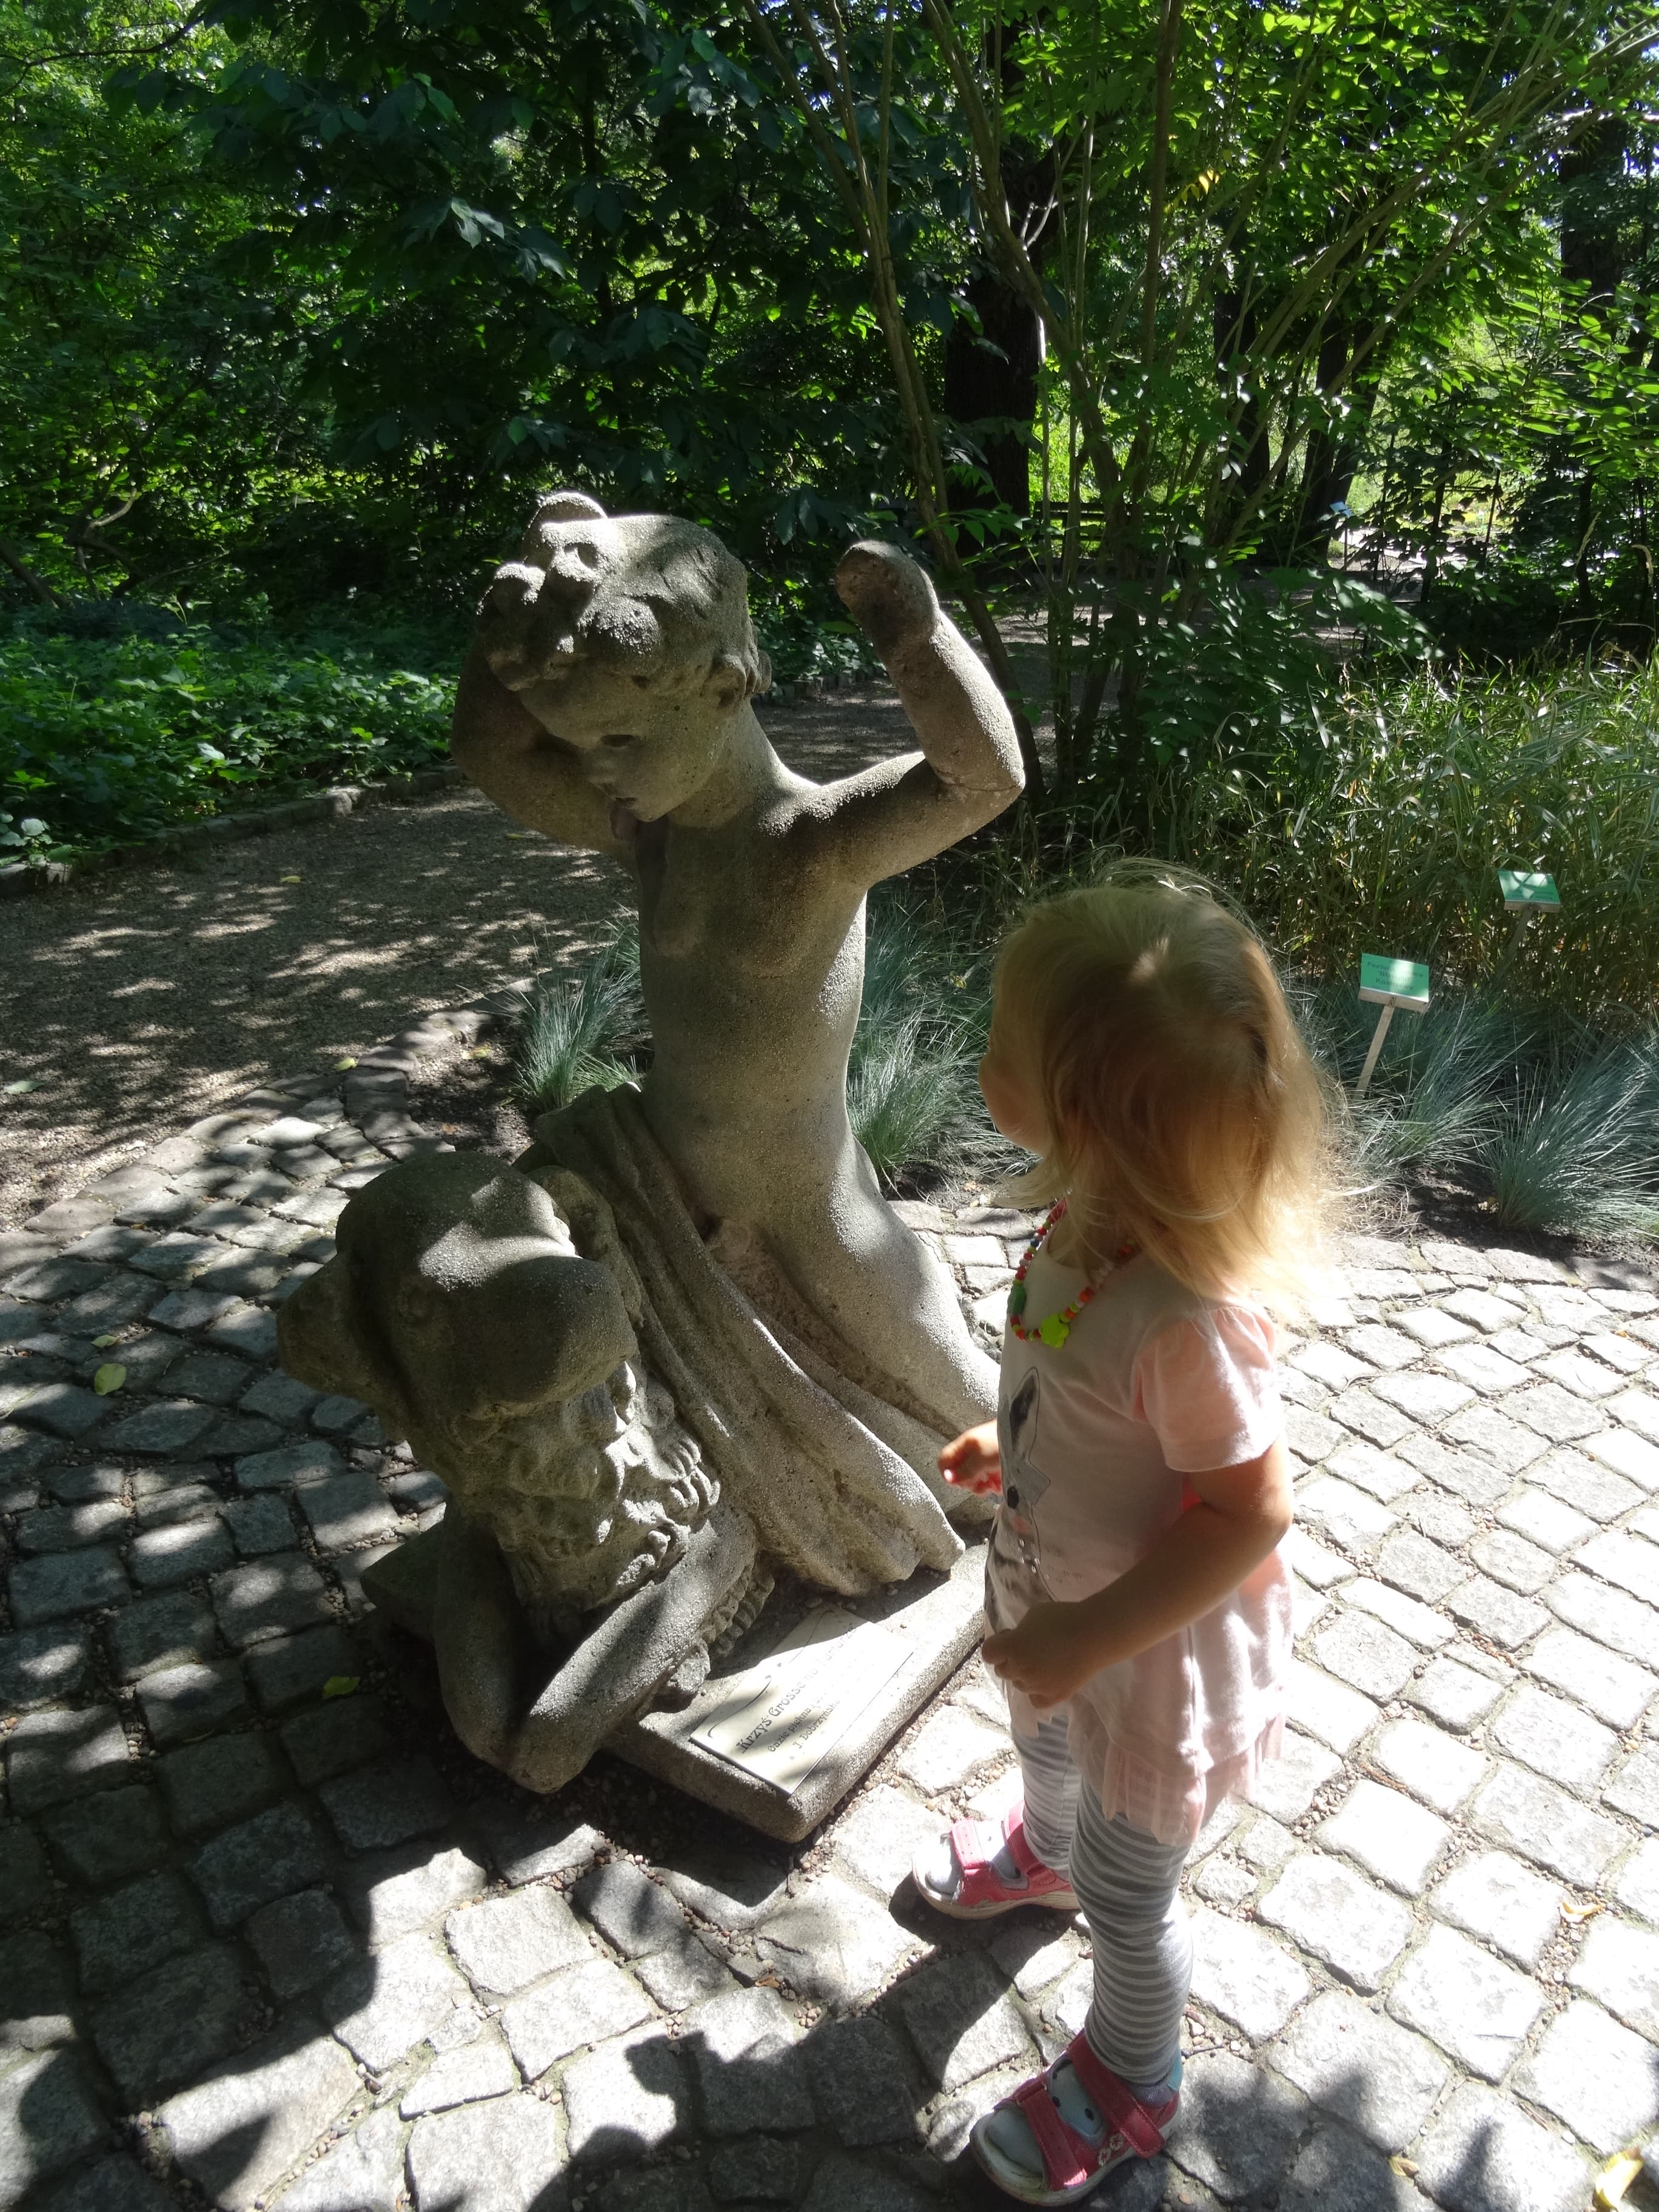 rzeźba - ogród botaniczny we Wrocławiu